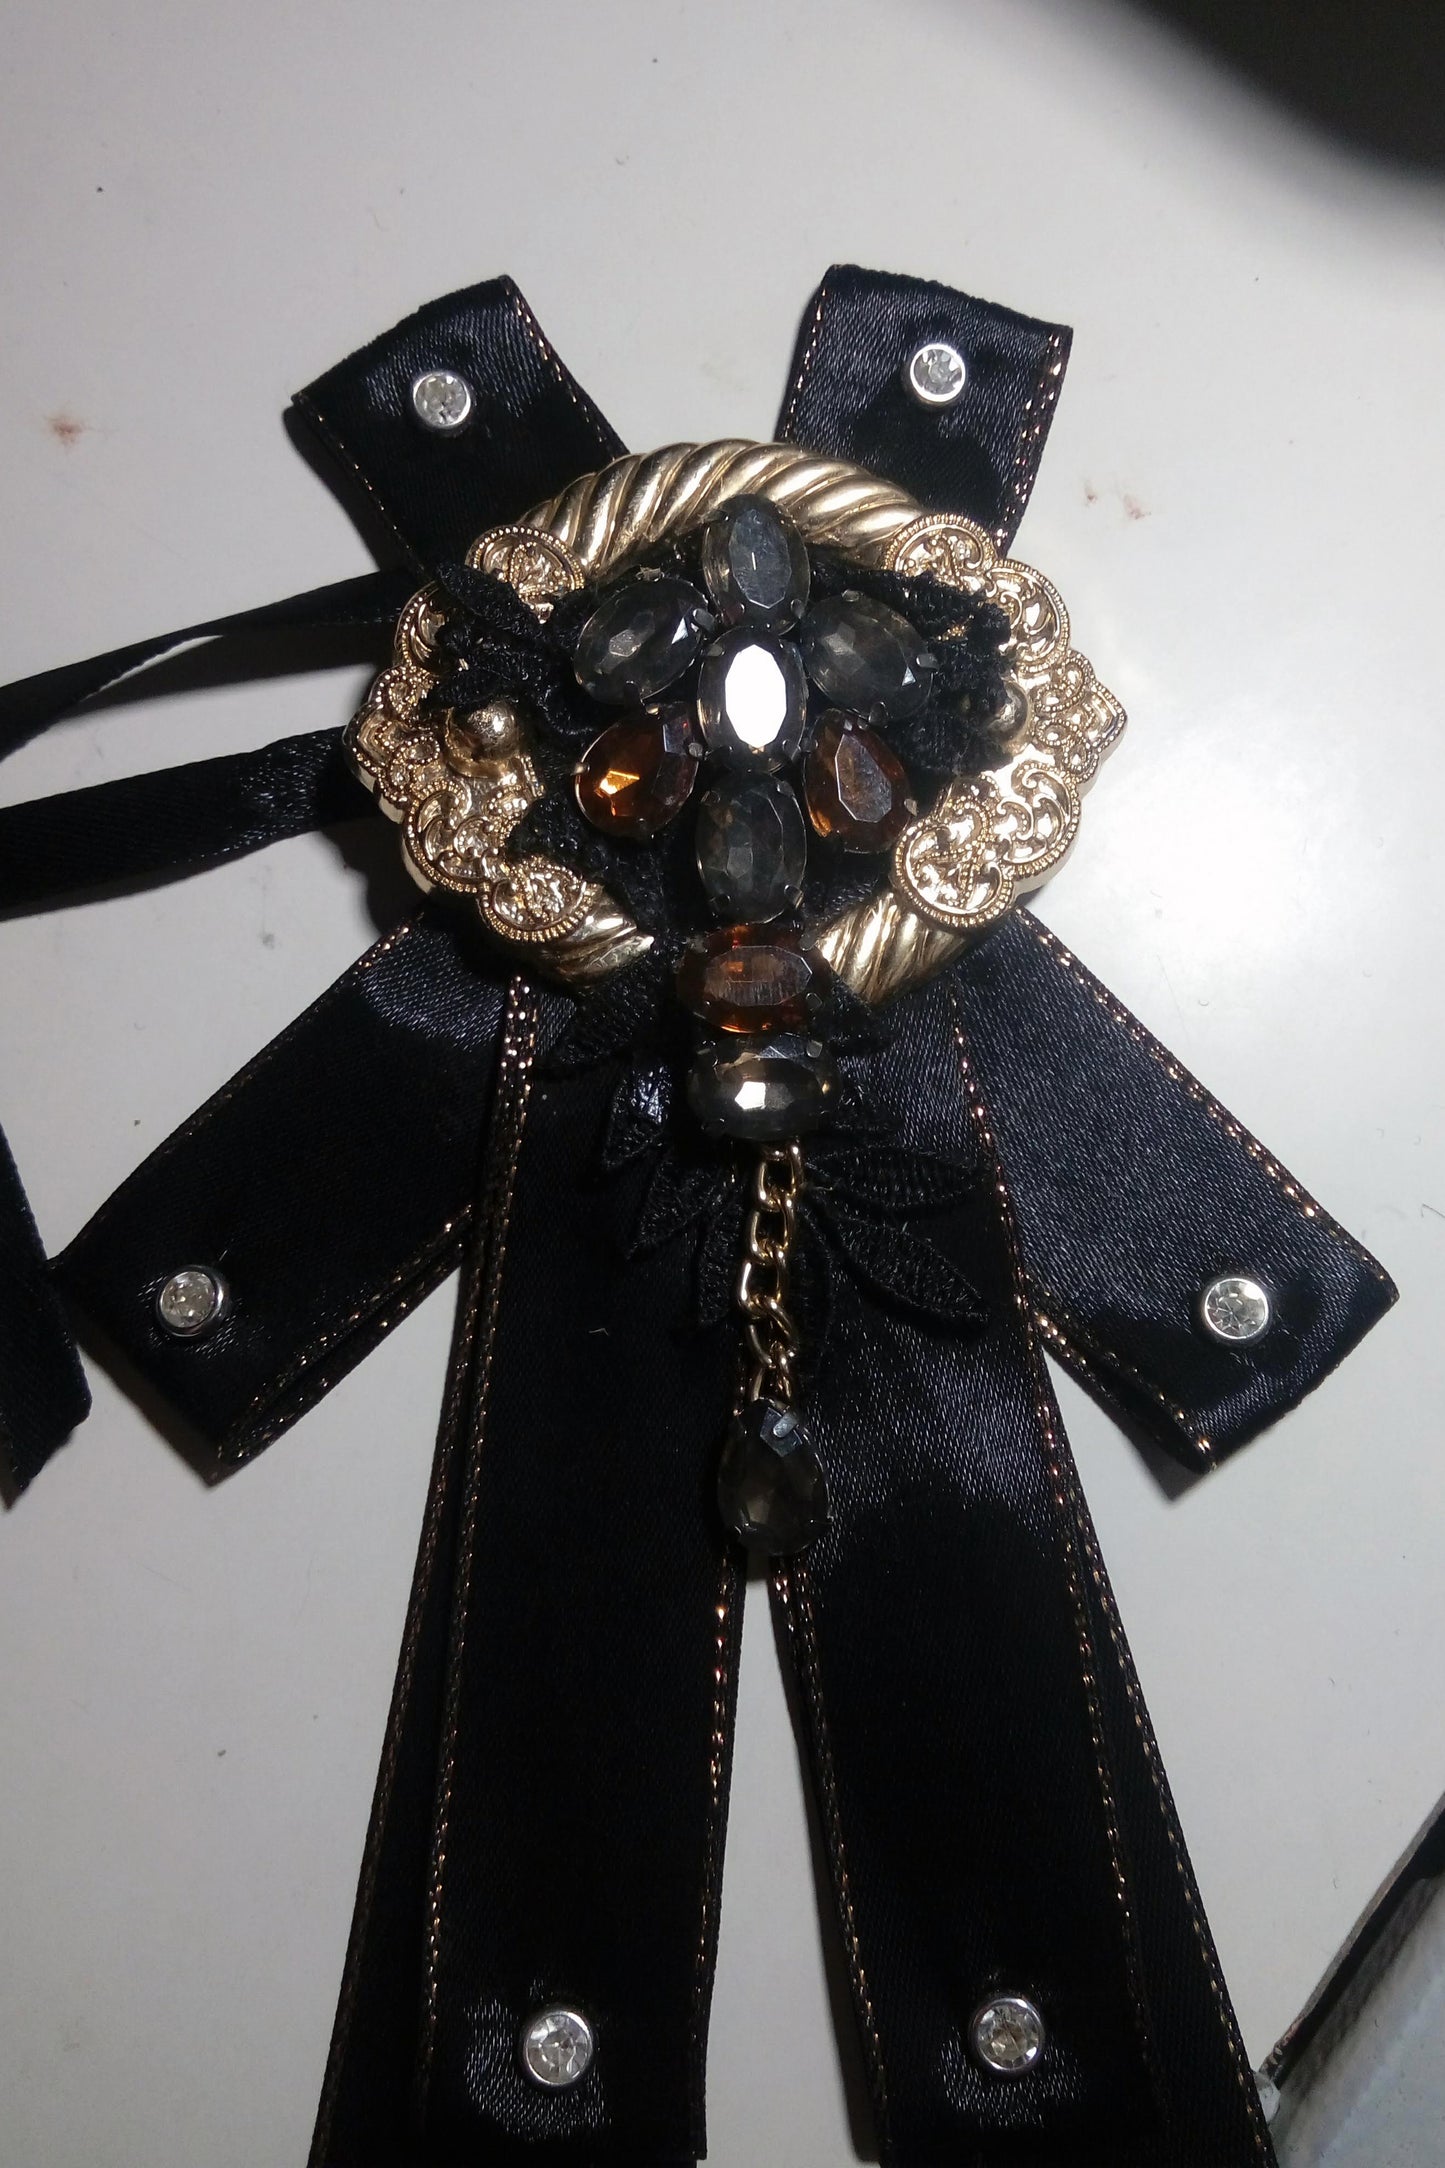 Gothick neck tie custom made